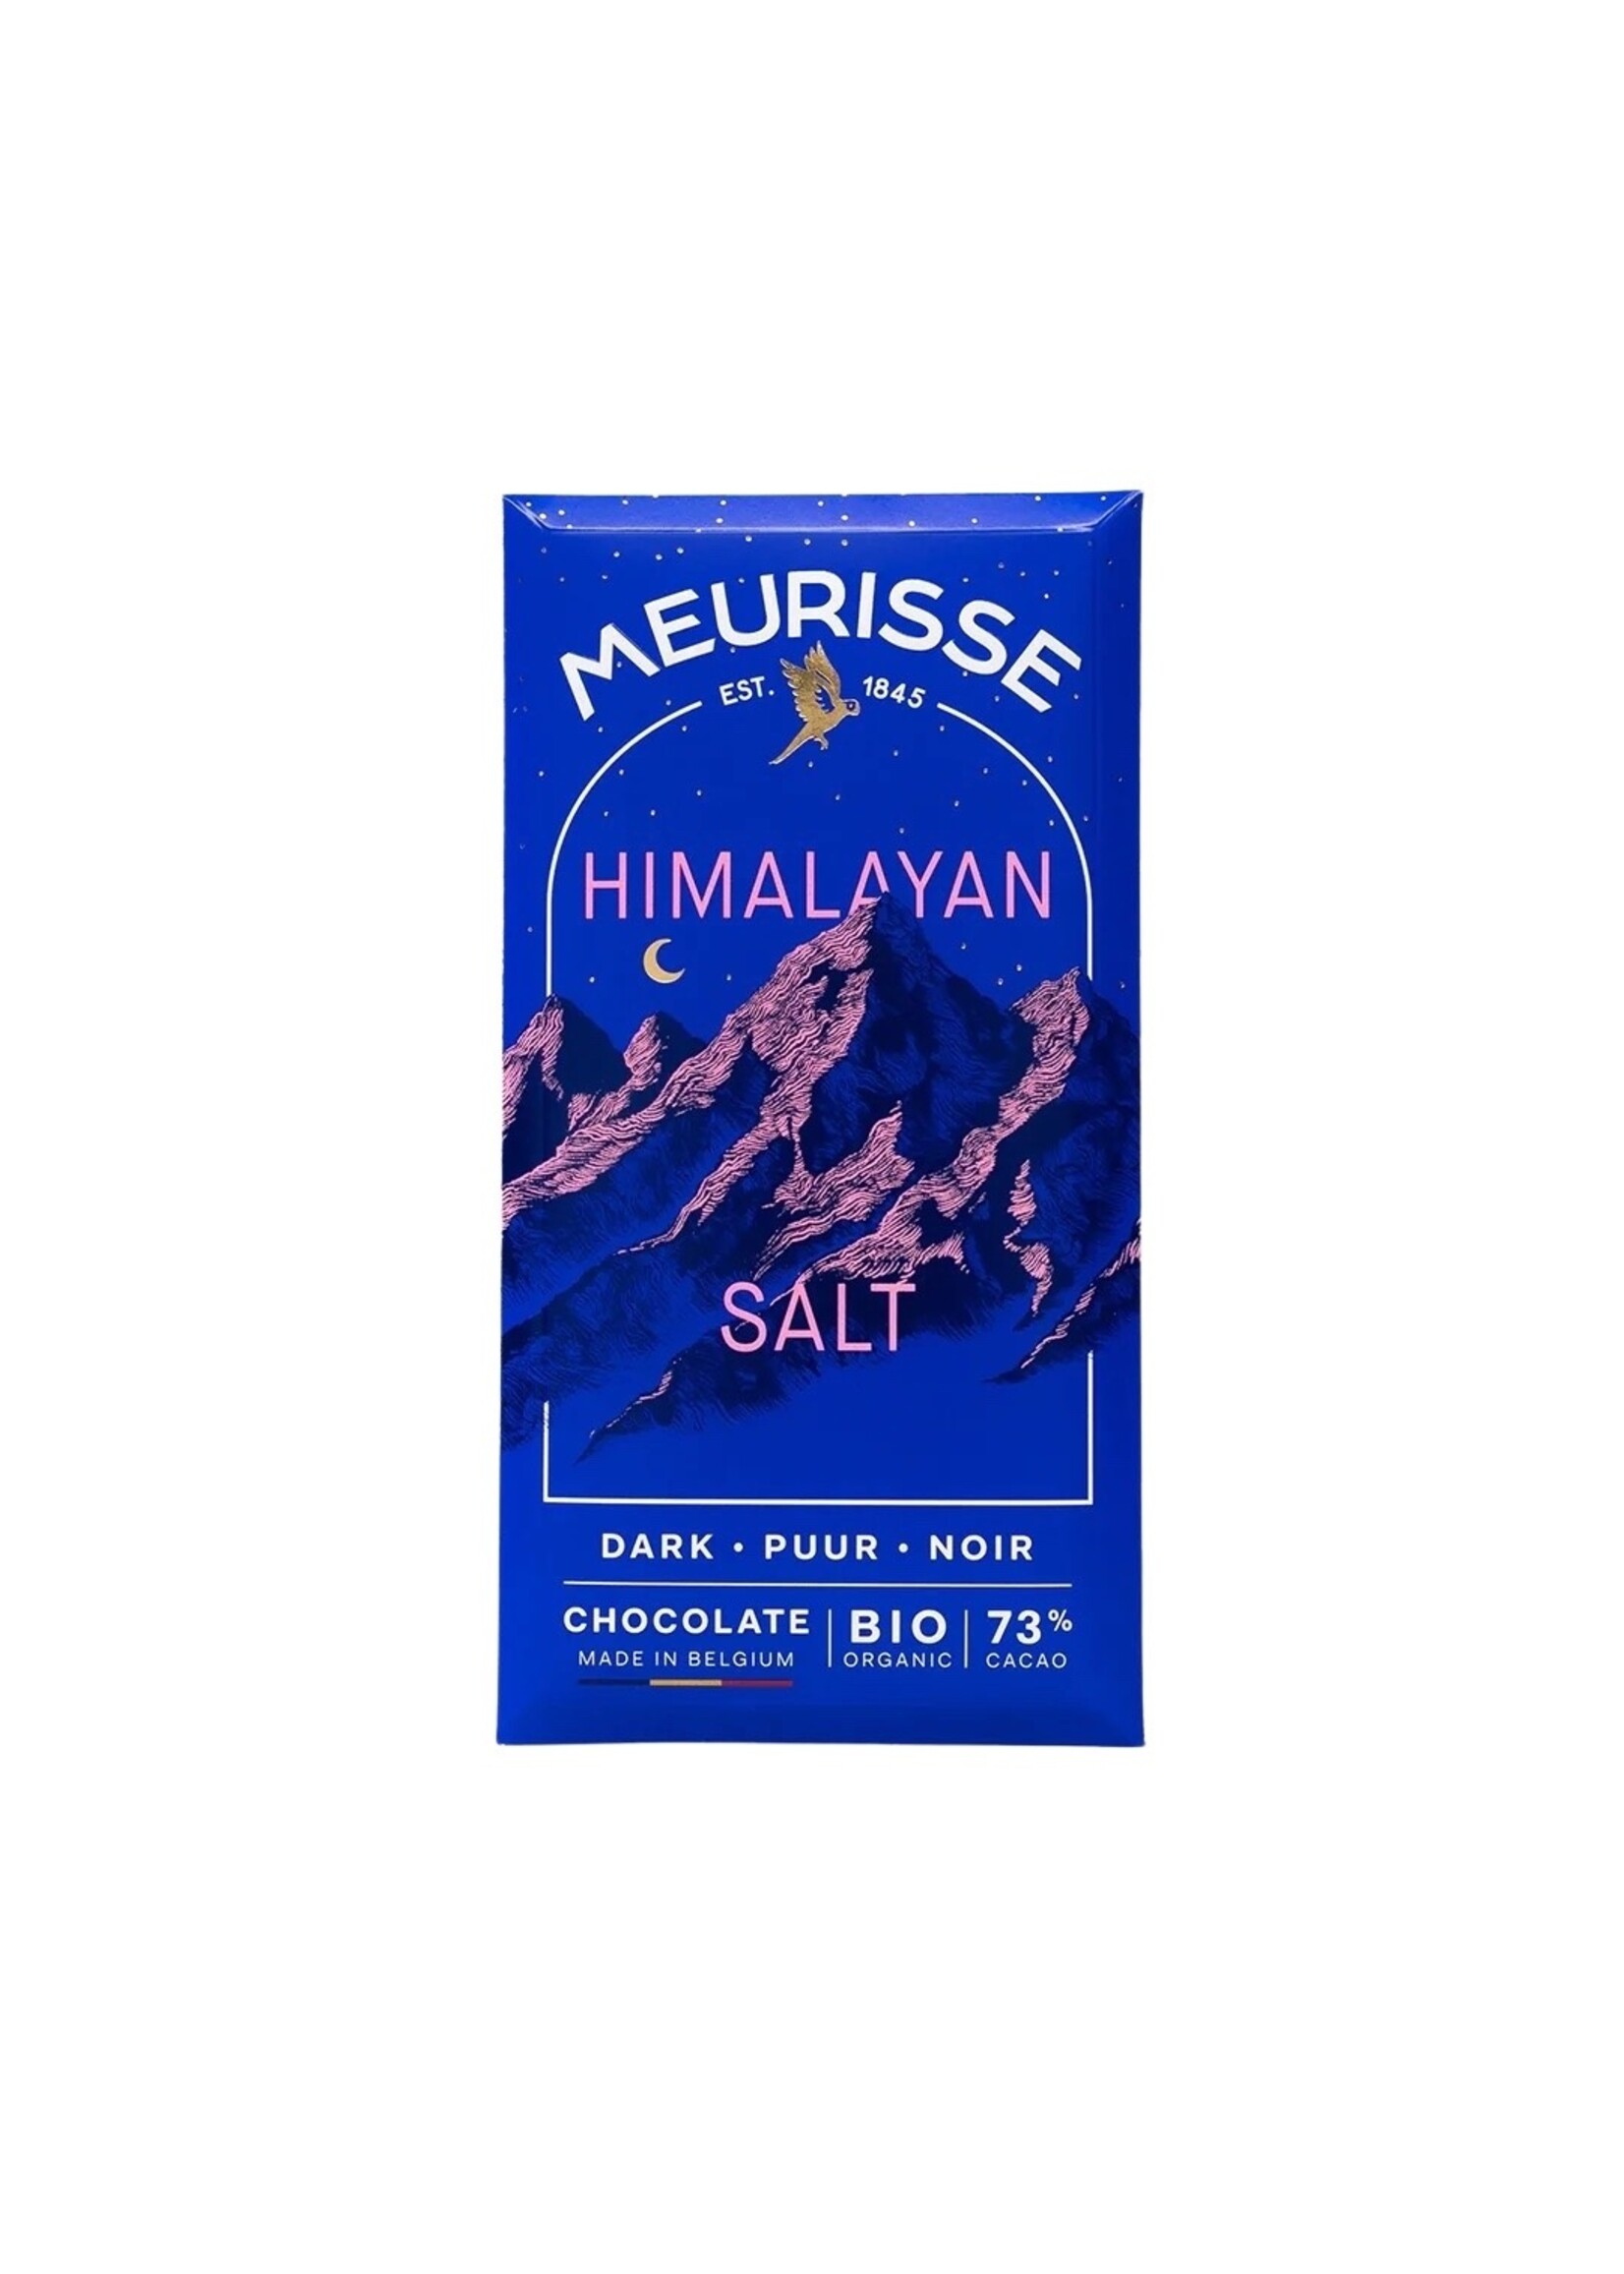 MEURISSE CHOCOLATE DARK CHOCOLATE WITH HIMALAYAN SALT